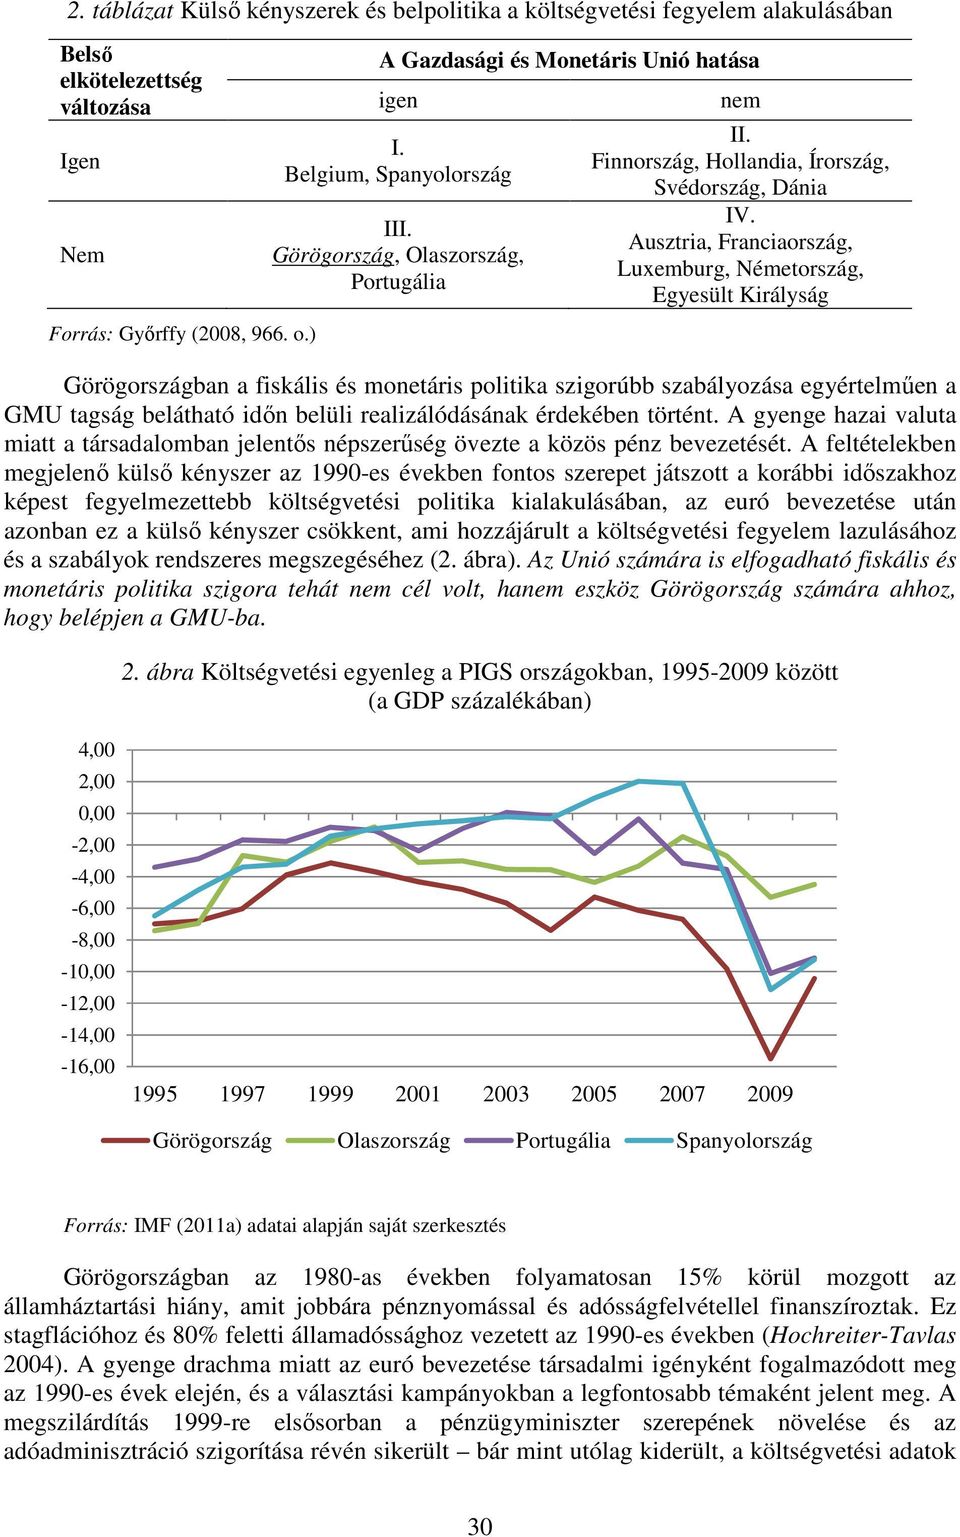 Ausztria, Franciaország, Luxemburg, Németország, Egyesült Királyság Görögországban a fiskális és monetáris politika szigorúbb szabályozása egyértelműen a GMU tagság belátható időn belüli